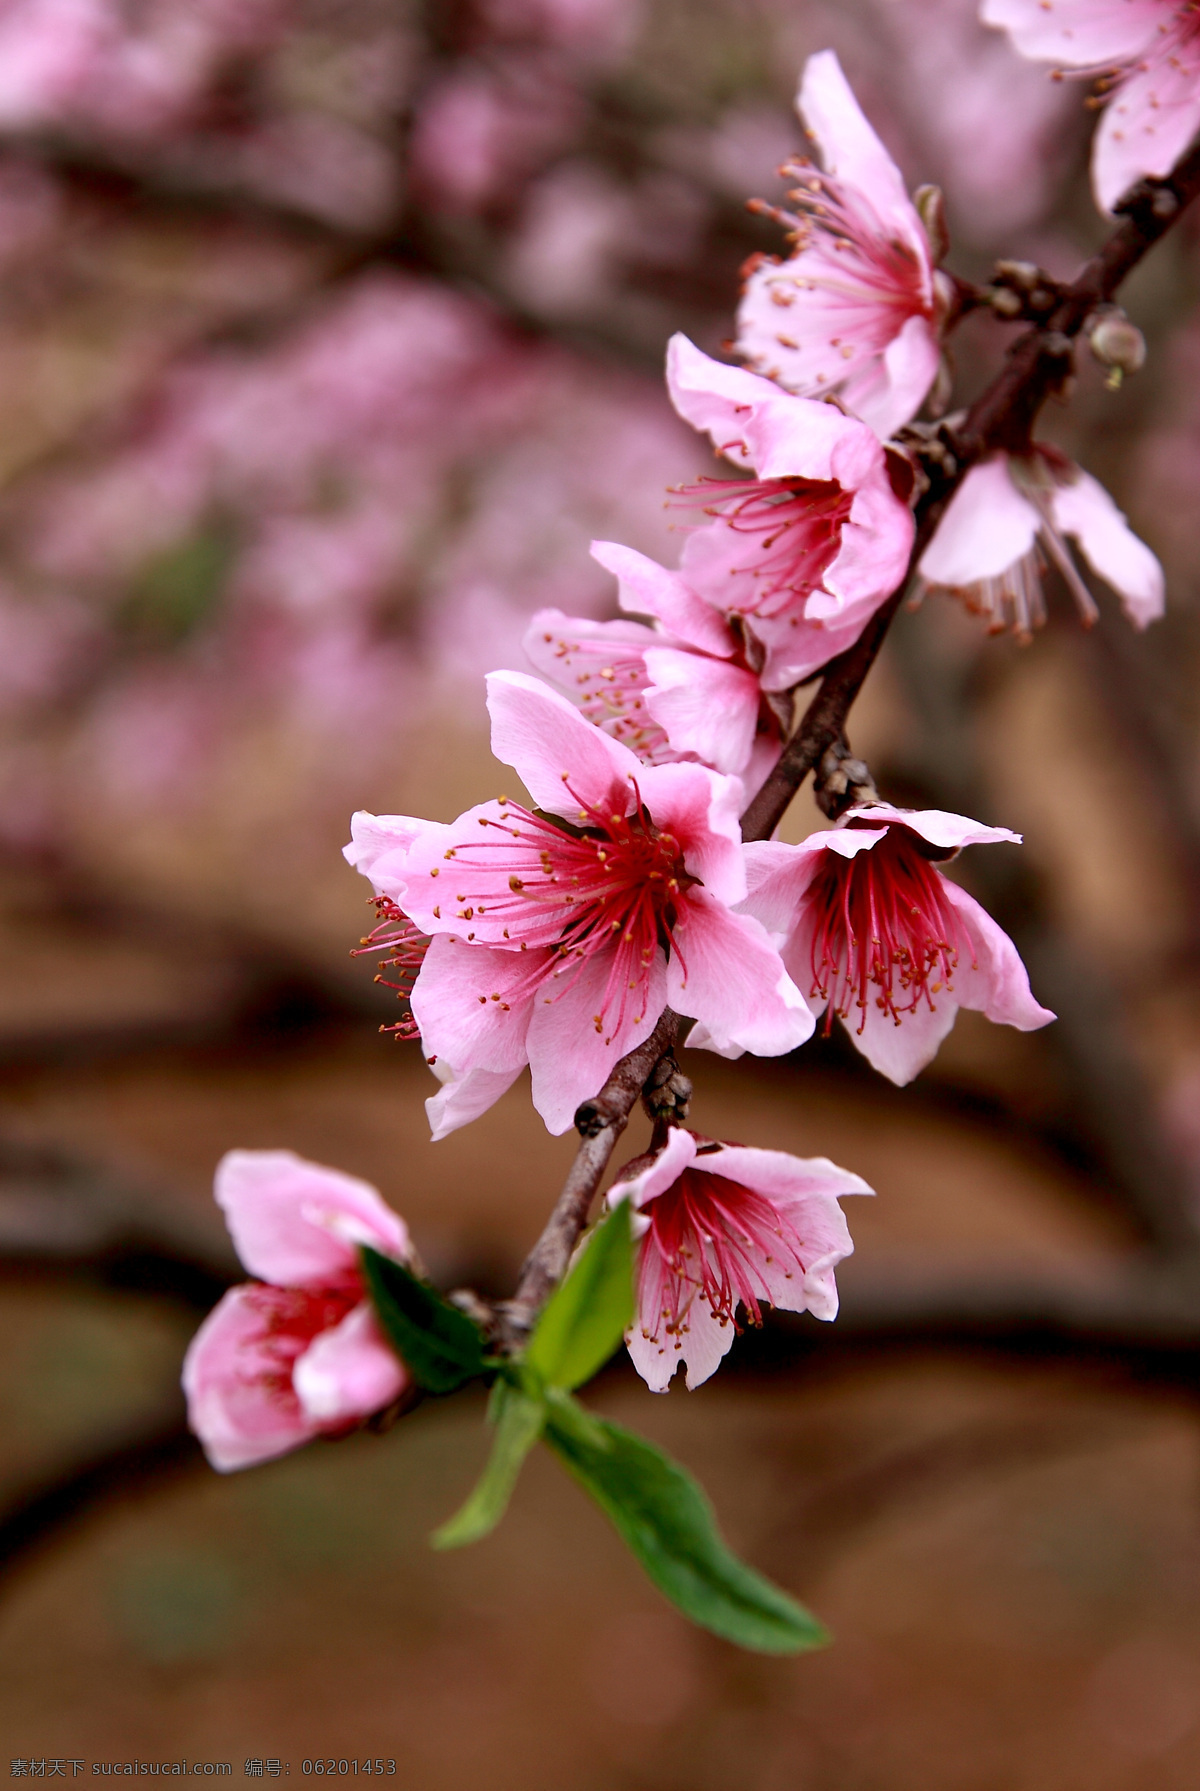 桃花系列 桃花 植物 摄影图片 生态 平面 照片 花卉 庭院盆栽 种植 水果 生物世界 花草